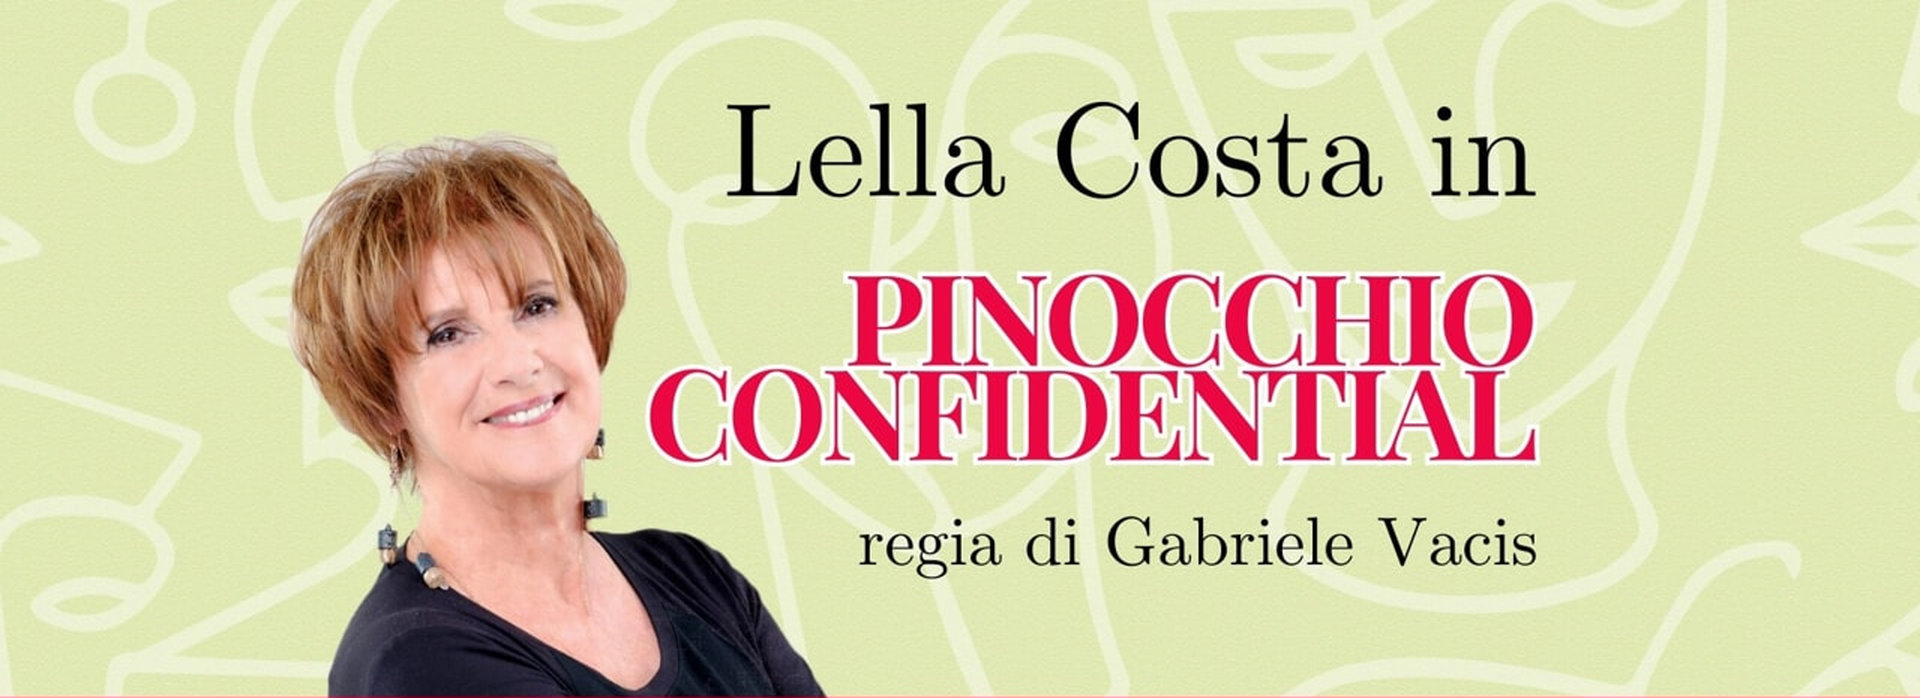 Lella Costa in Pinocchio confidential | 26 luglio - ore 21